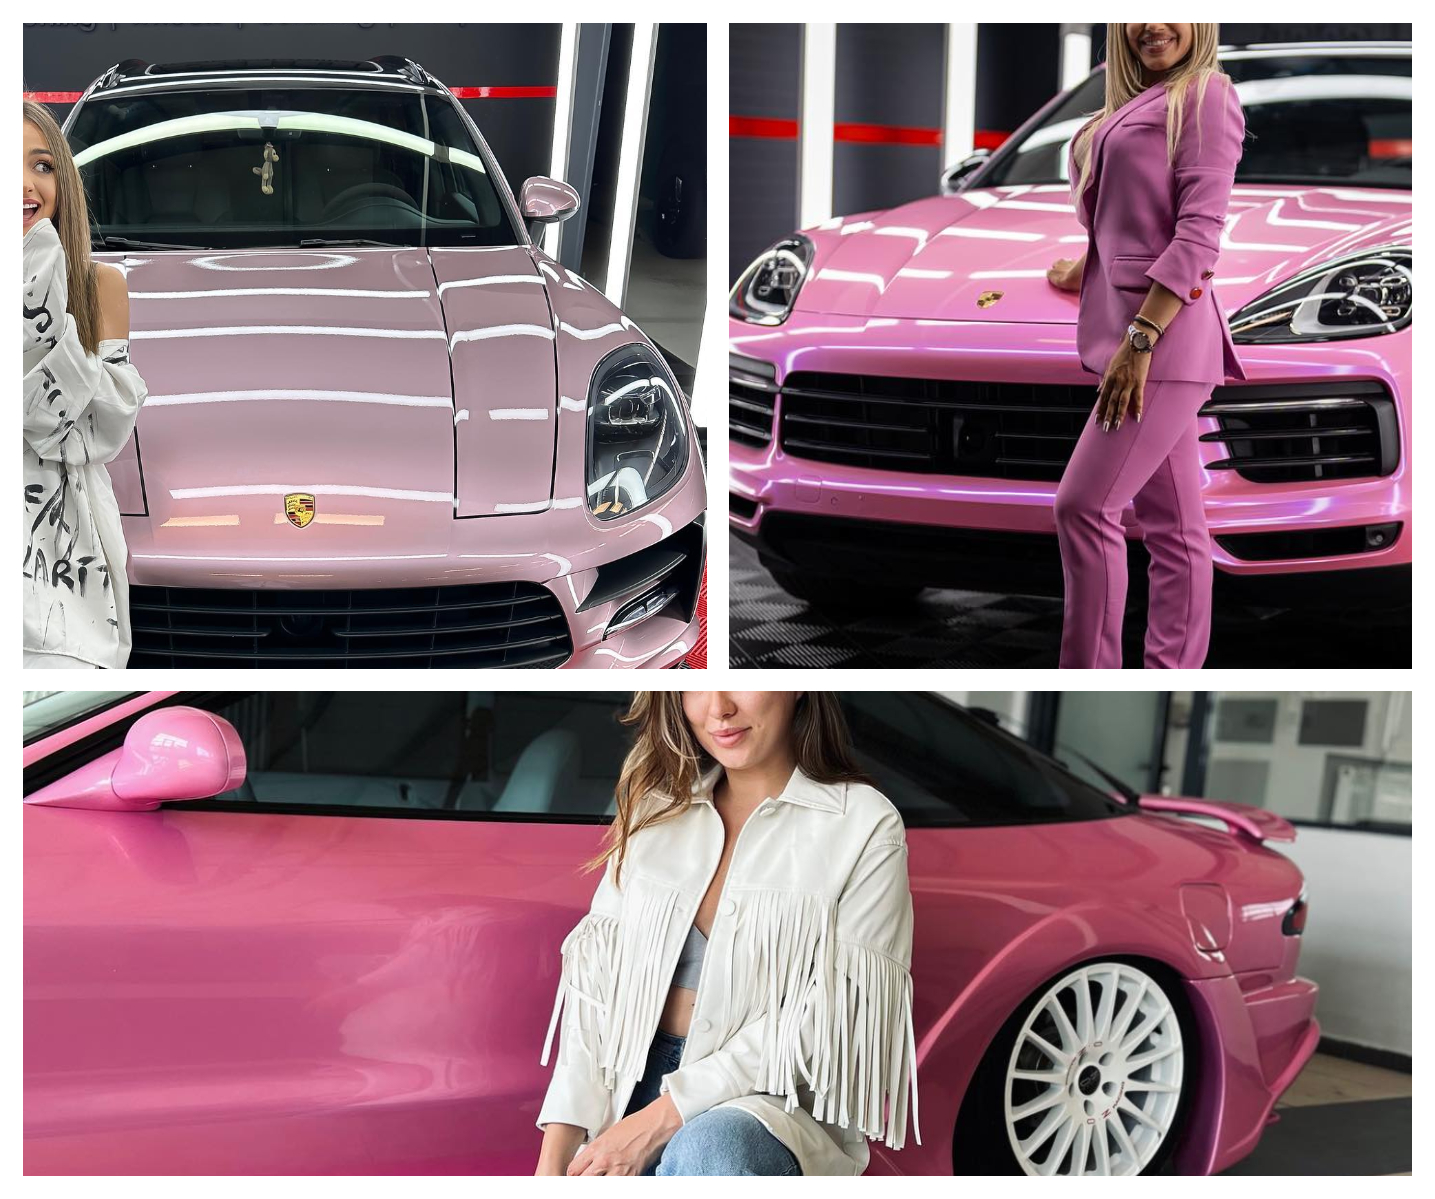 Vedetele noastre care au dat mii de euro să-și vopsească mașinile roz, ca-n Barbie /GALERIE FOTO!